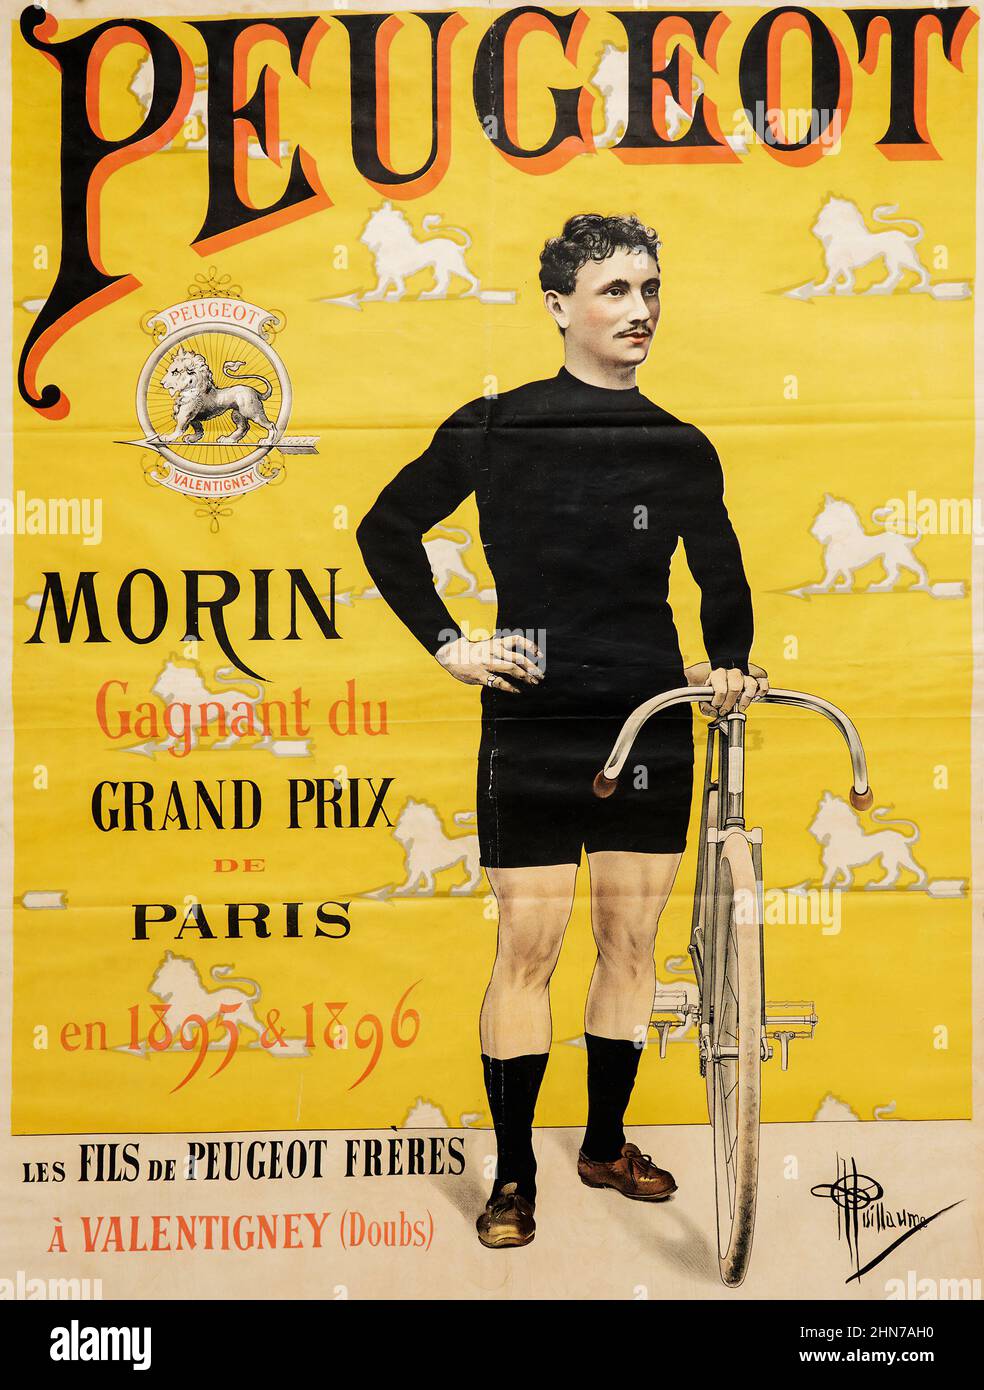 Albert Guillaume (French, 1873-1942). Peugeot, 1895. Morin, Gagnant du Grand Prix de Paris en 1895 & 1896. Vintage bicycle advertisement poster. Stock Photo